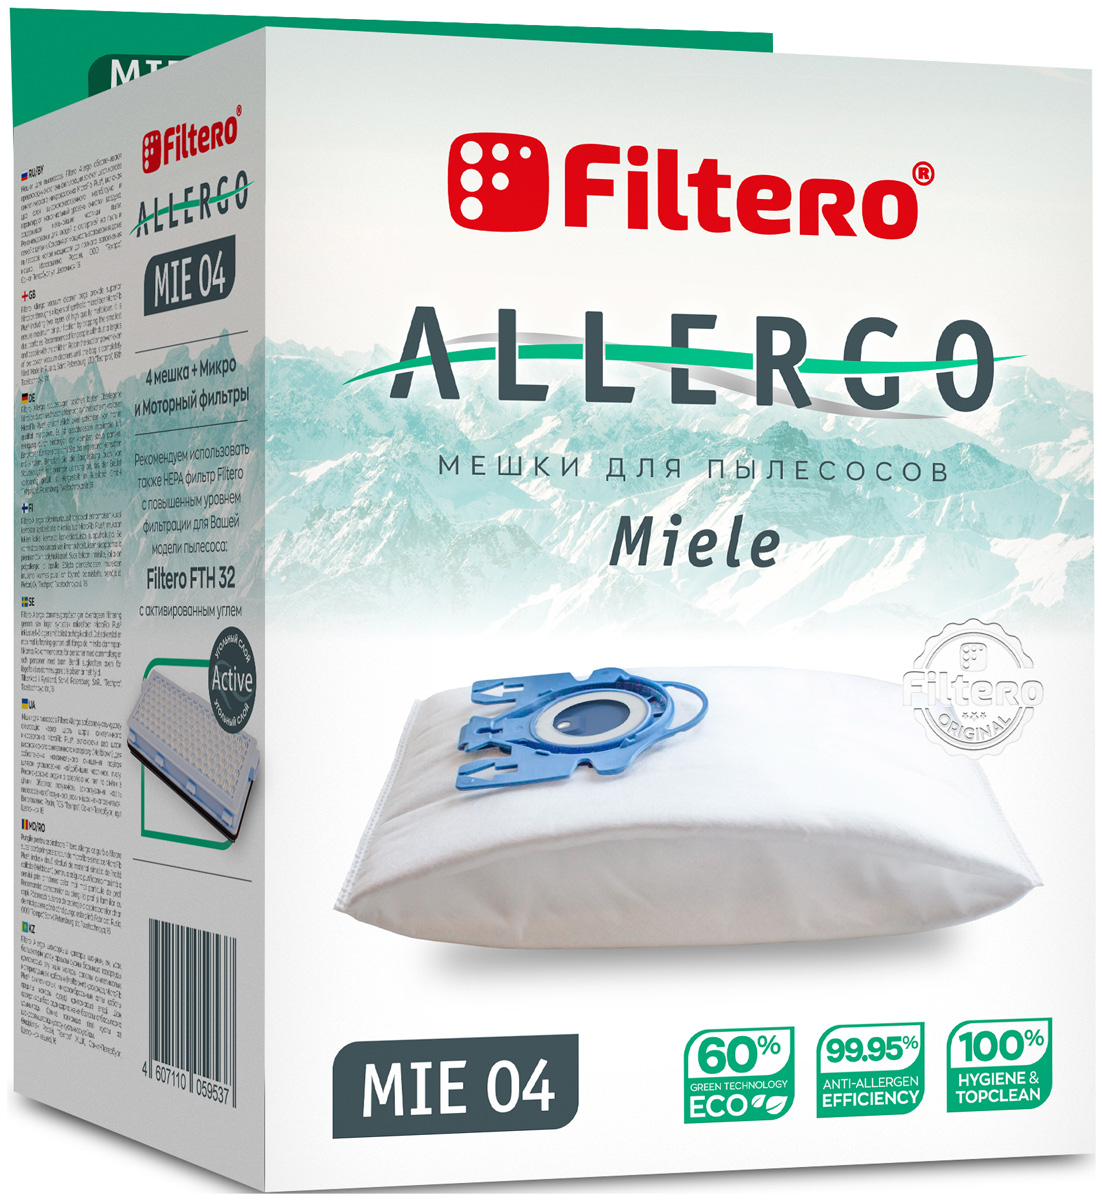 цена Пылесборники Filtero MIE 04 Allergo 4шт. + моторный фильтр и микрофильтр